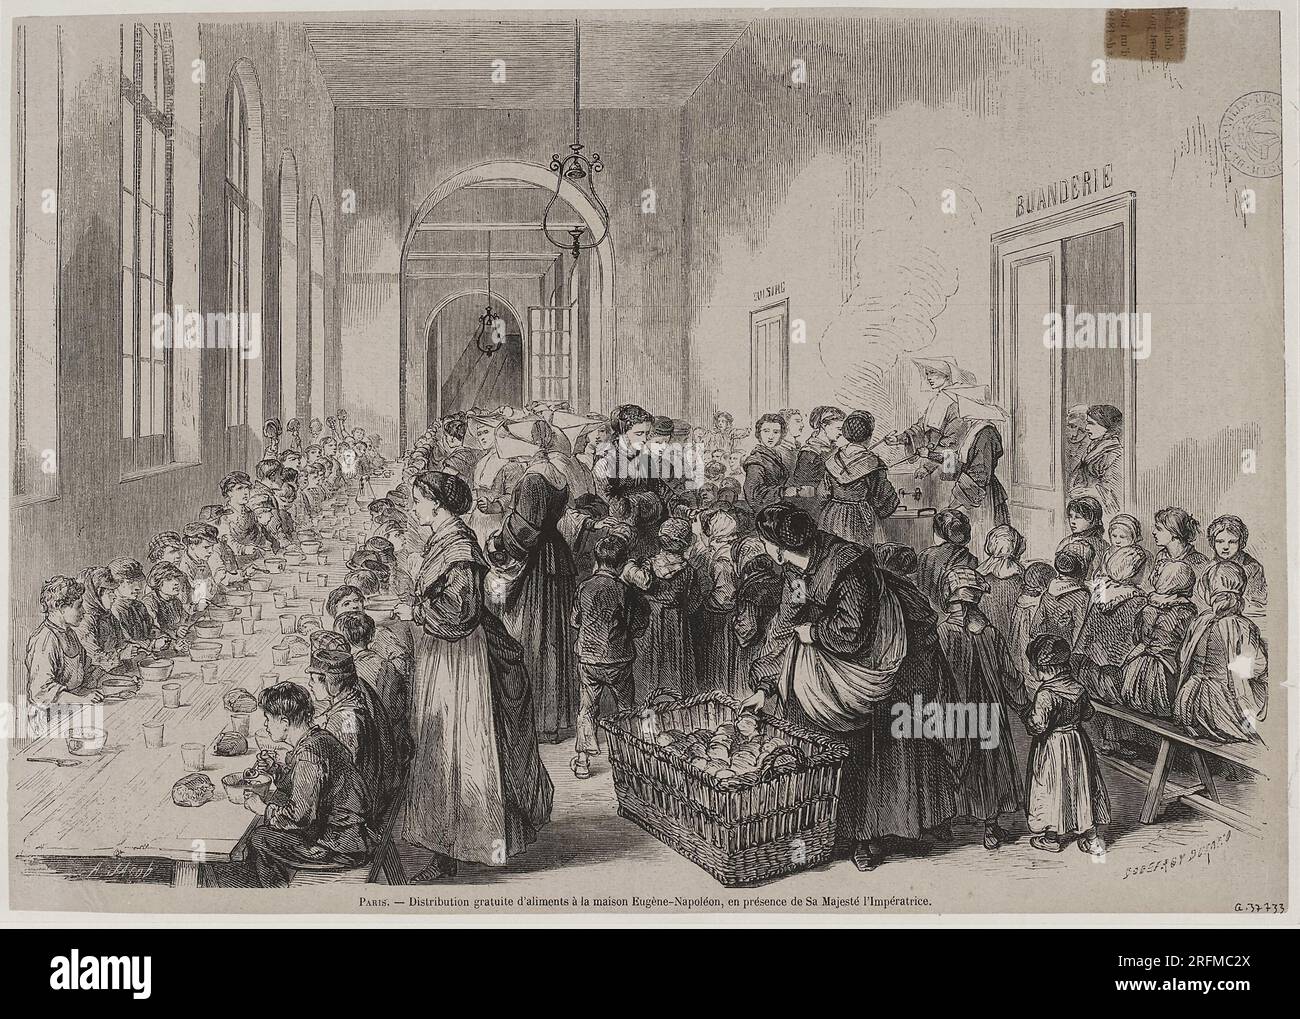 Distribution gratuite d'aliments à la maison Eugène-Napoléon, en présence de sa Majesté l'Impératrice Gravure de Godefroy Durand, d'après un dessin d'Armand Victor Jacob 1868 Parigi, musée Carnavalet Foto Stock